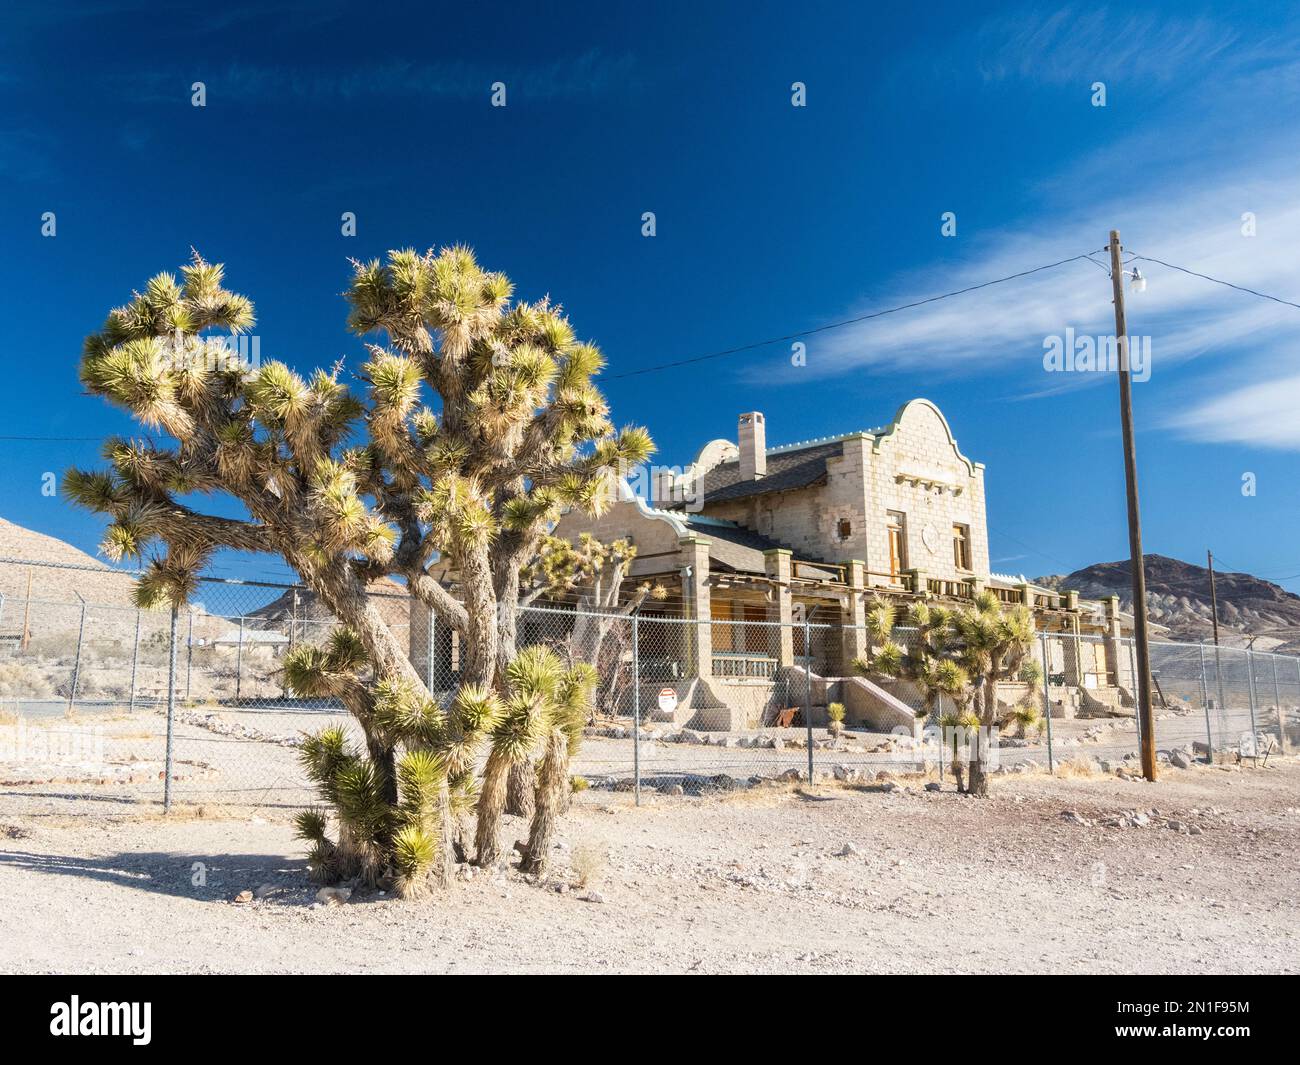 Verlassenes Eisenbahndepot in Rhyolite, eine Geisterstadt in Nye County, in der Nähe des Death Valley National Park, Nevada, Vereinigte Staaten von Amerika, Nordamerika Stockfoto